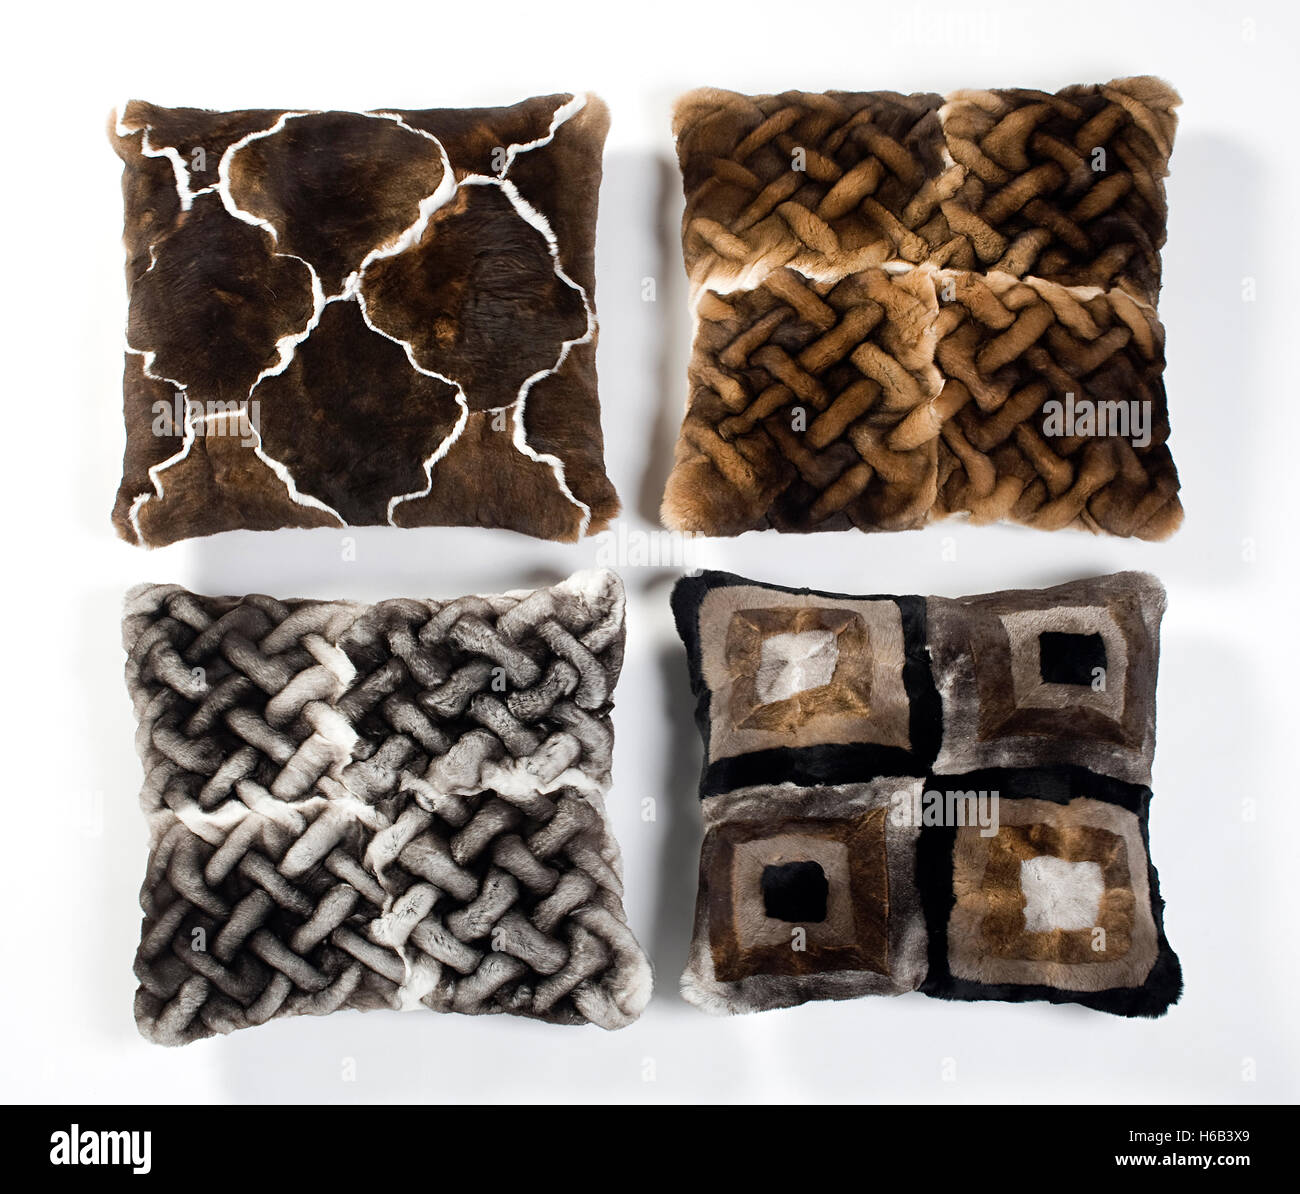 Quatre coussins de fourrure avec différents dessins géométriques dans des tons de brun disposées côte à côte Banque D'Images